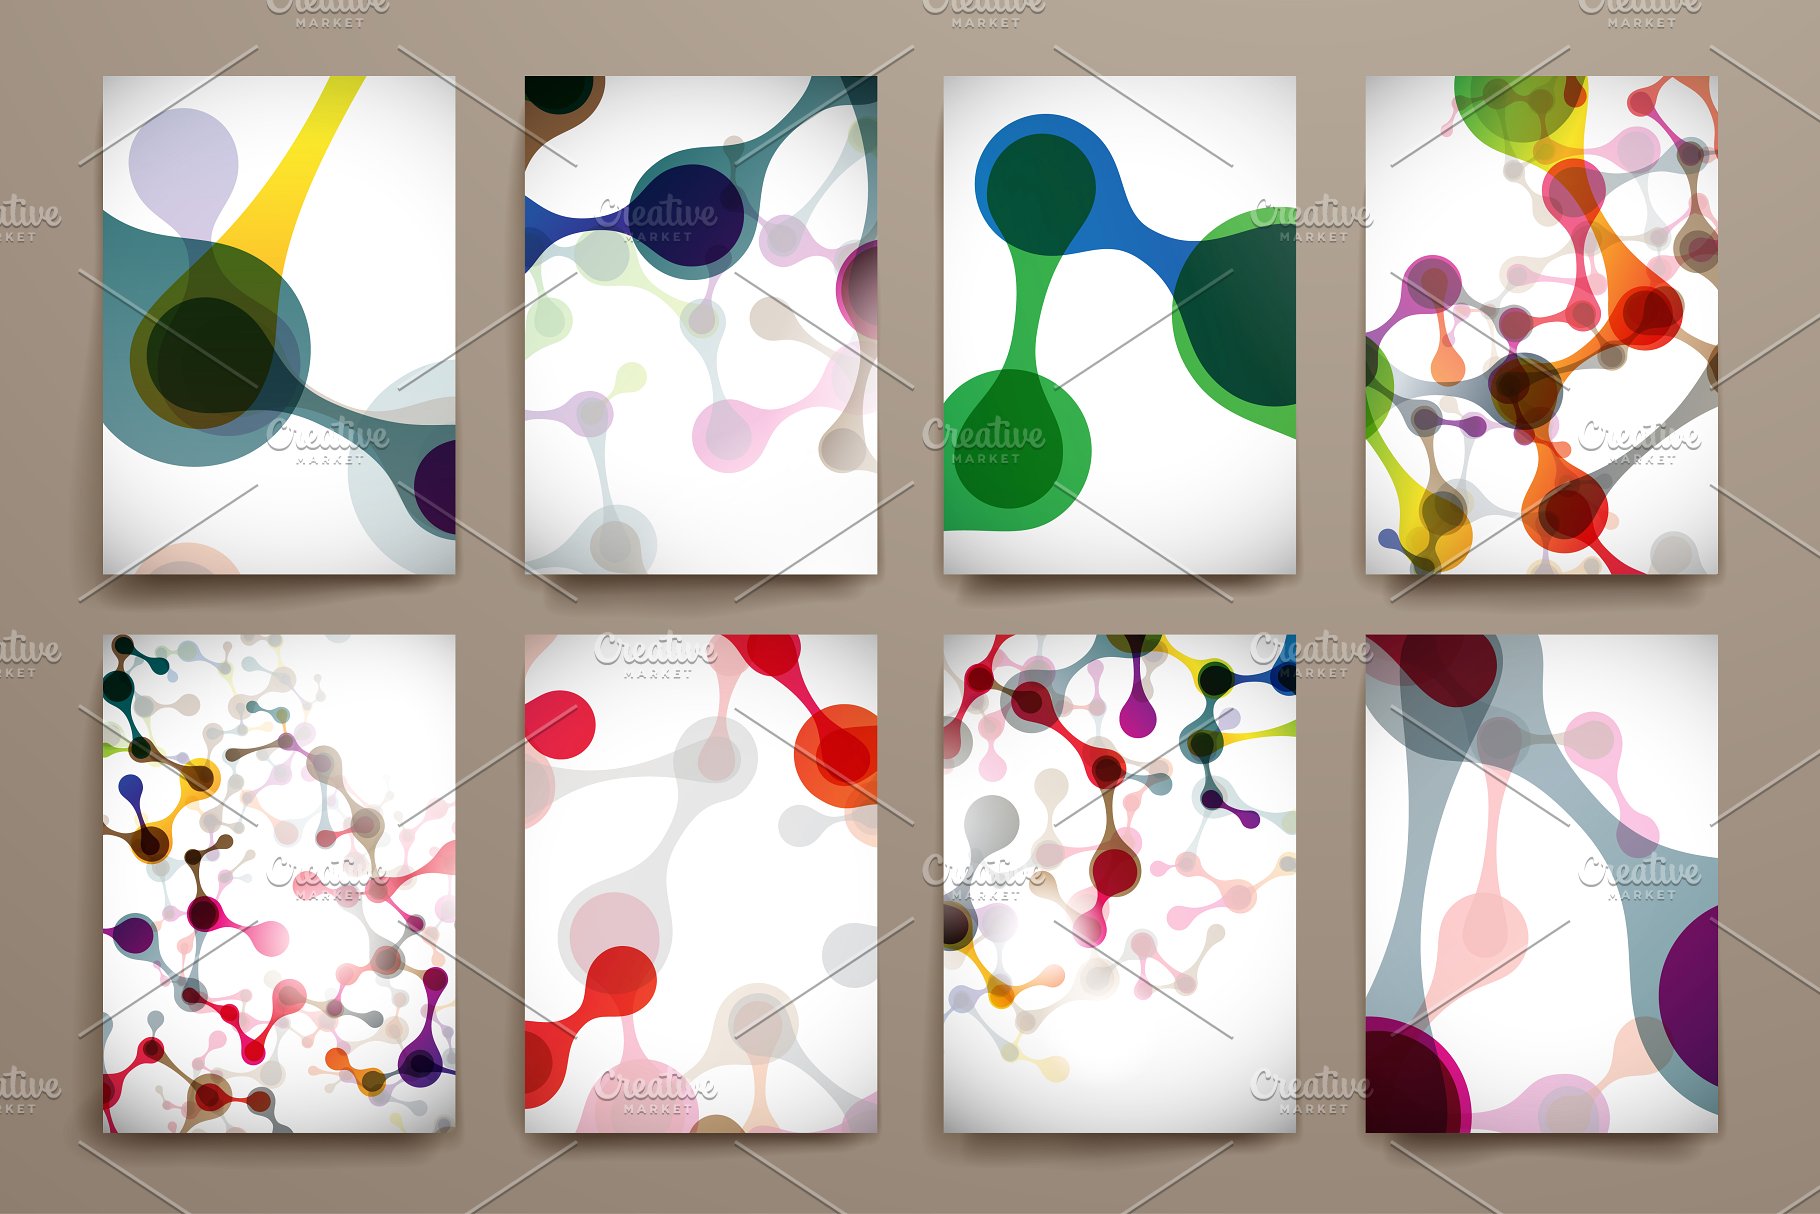 创意分子结构宣传册设计模板 Big Pack Molecular Templates插图(3)